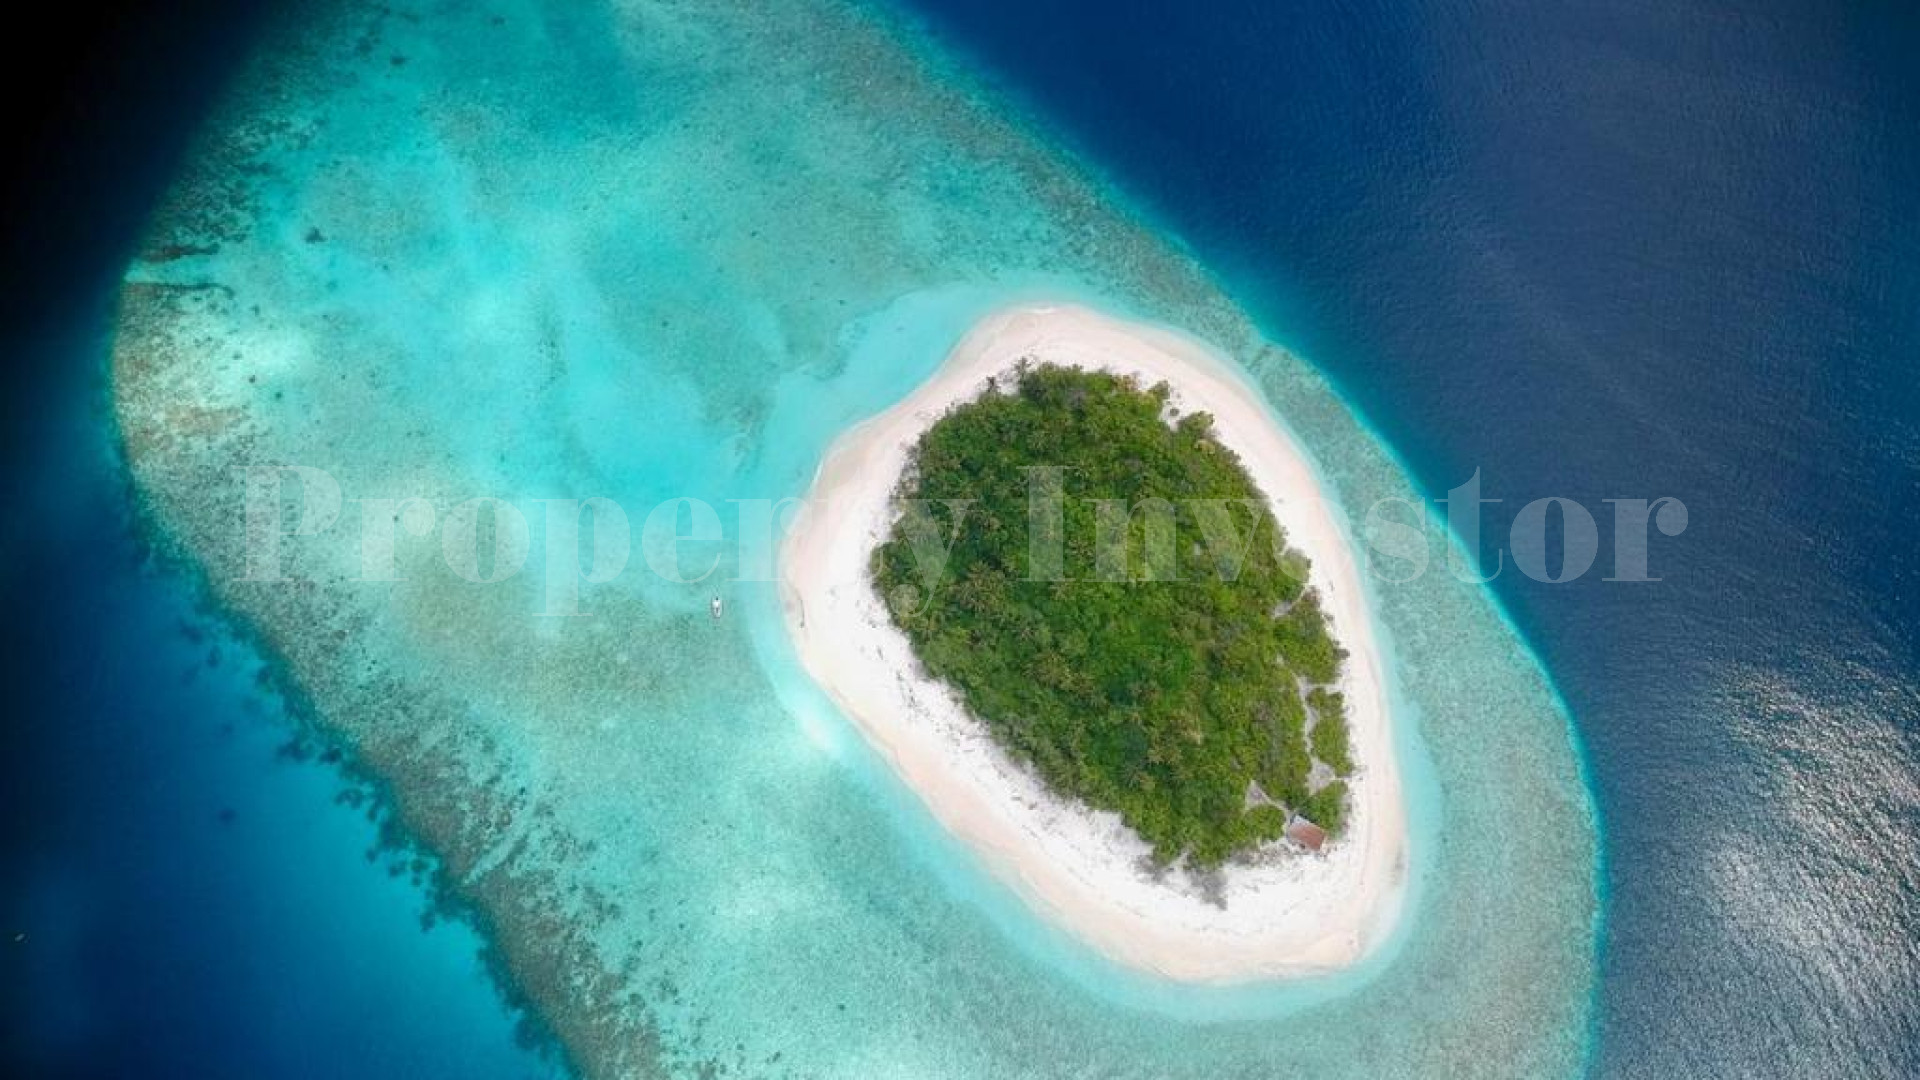 Нетронутый остров как с картинки 2,6 га  с утвержденным планом под коммерческое развитие на Мальдивах